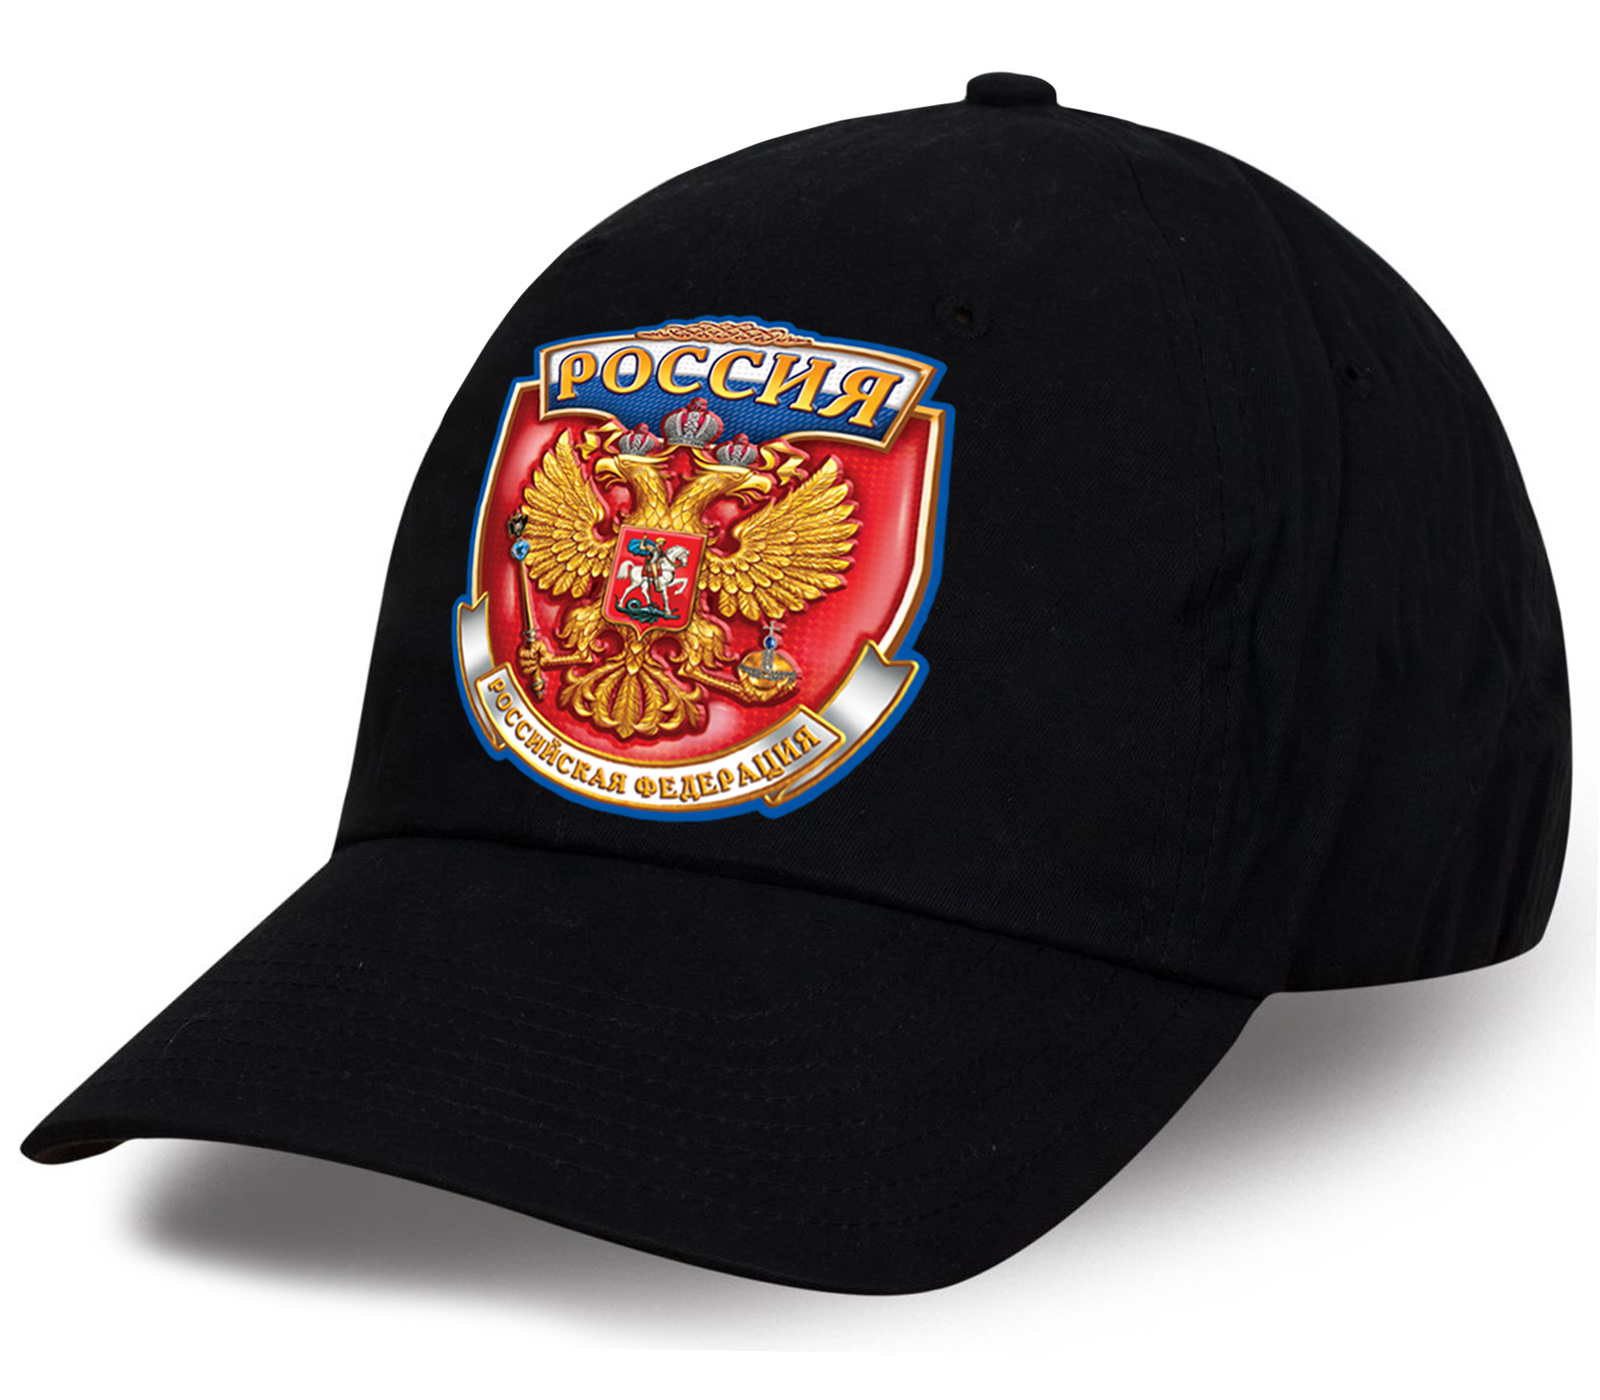 Заказать дизайнерскую хлопковую кепку с принтом государственной символики Россия по демократической цене